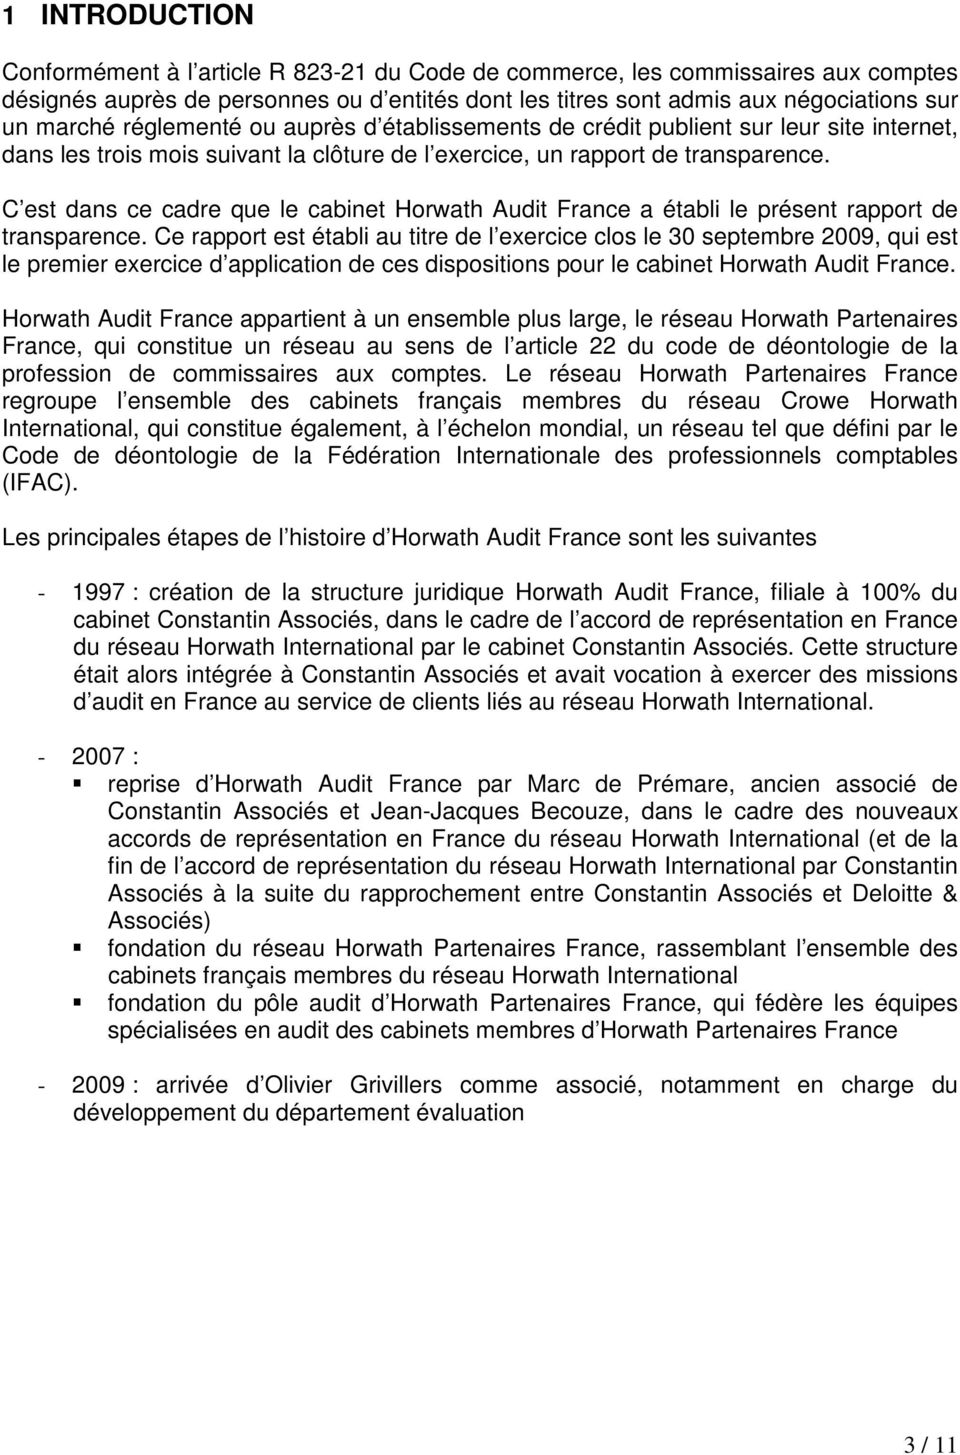 C est dans ce cadre que le cabinet Horwath Audit France a établi le présent rapport de transparence.